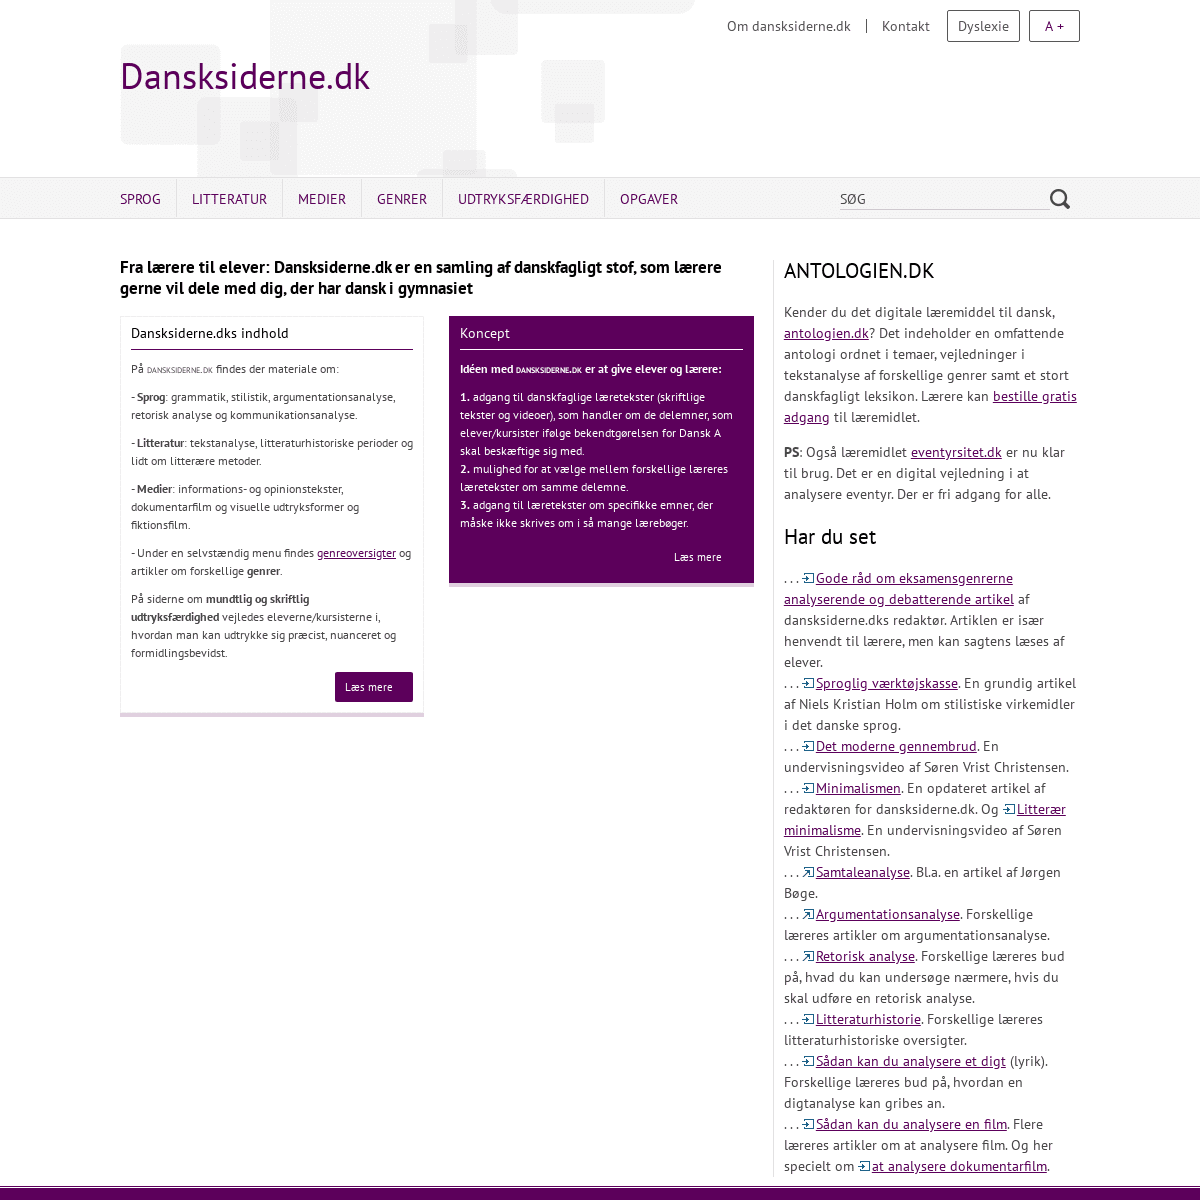 A complete backup of dansksiderne.dk